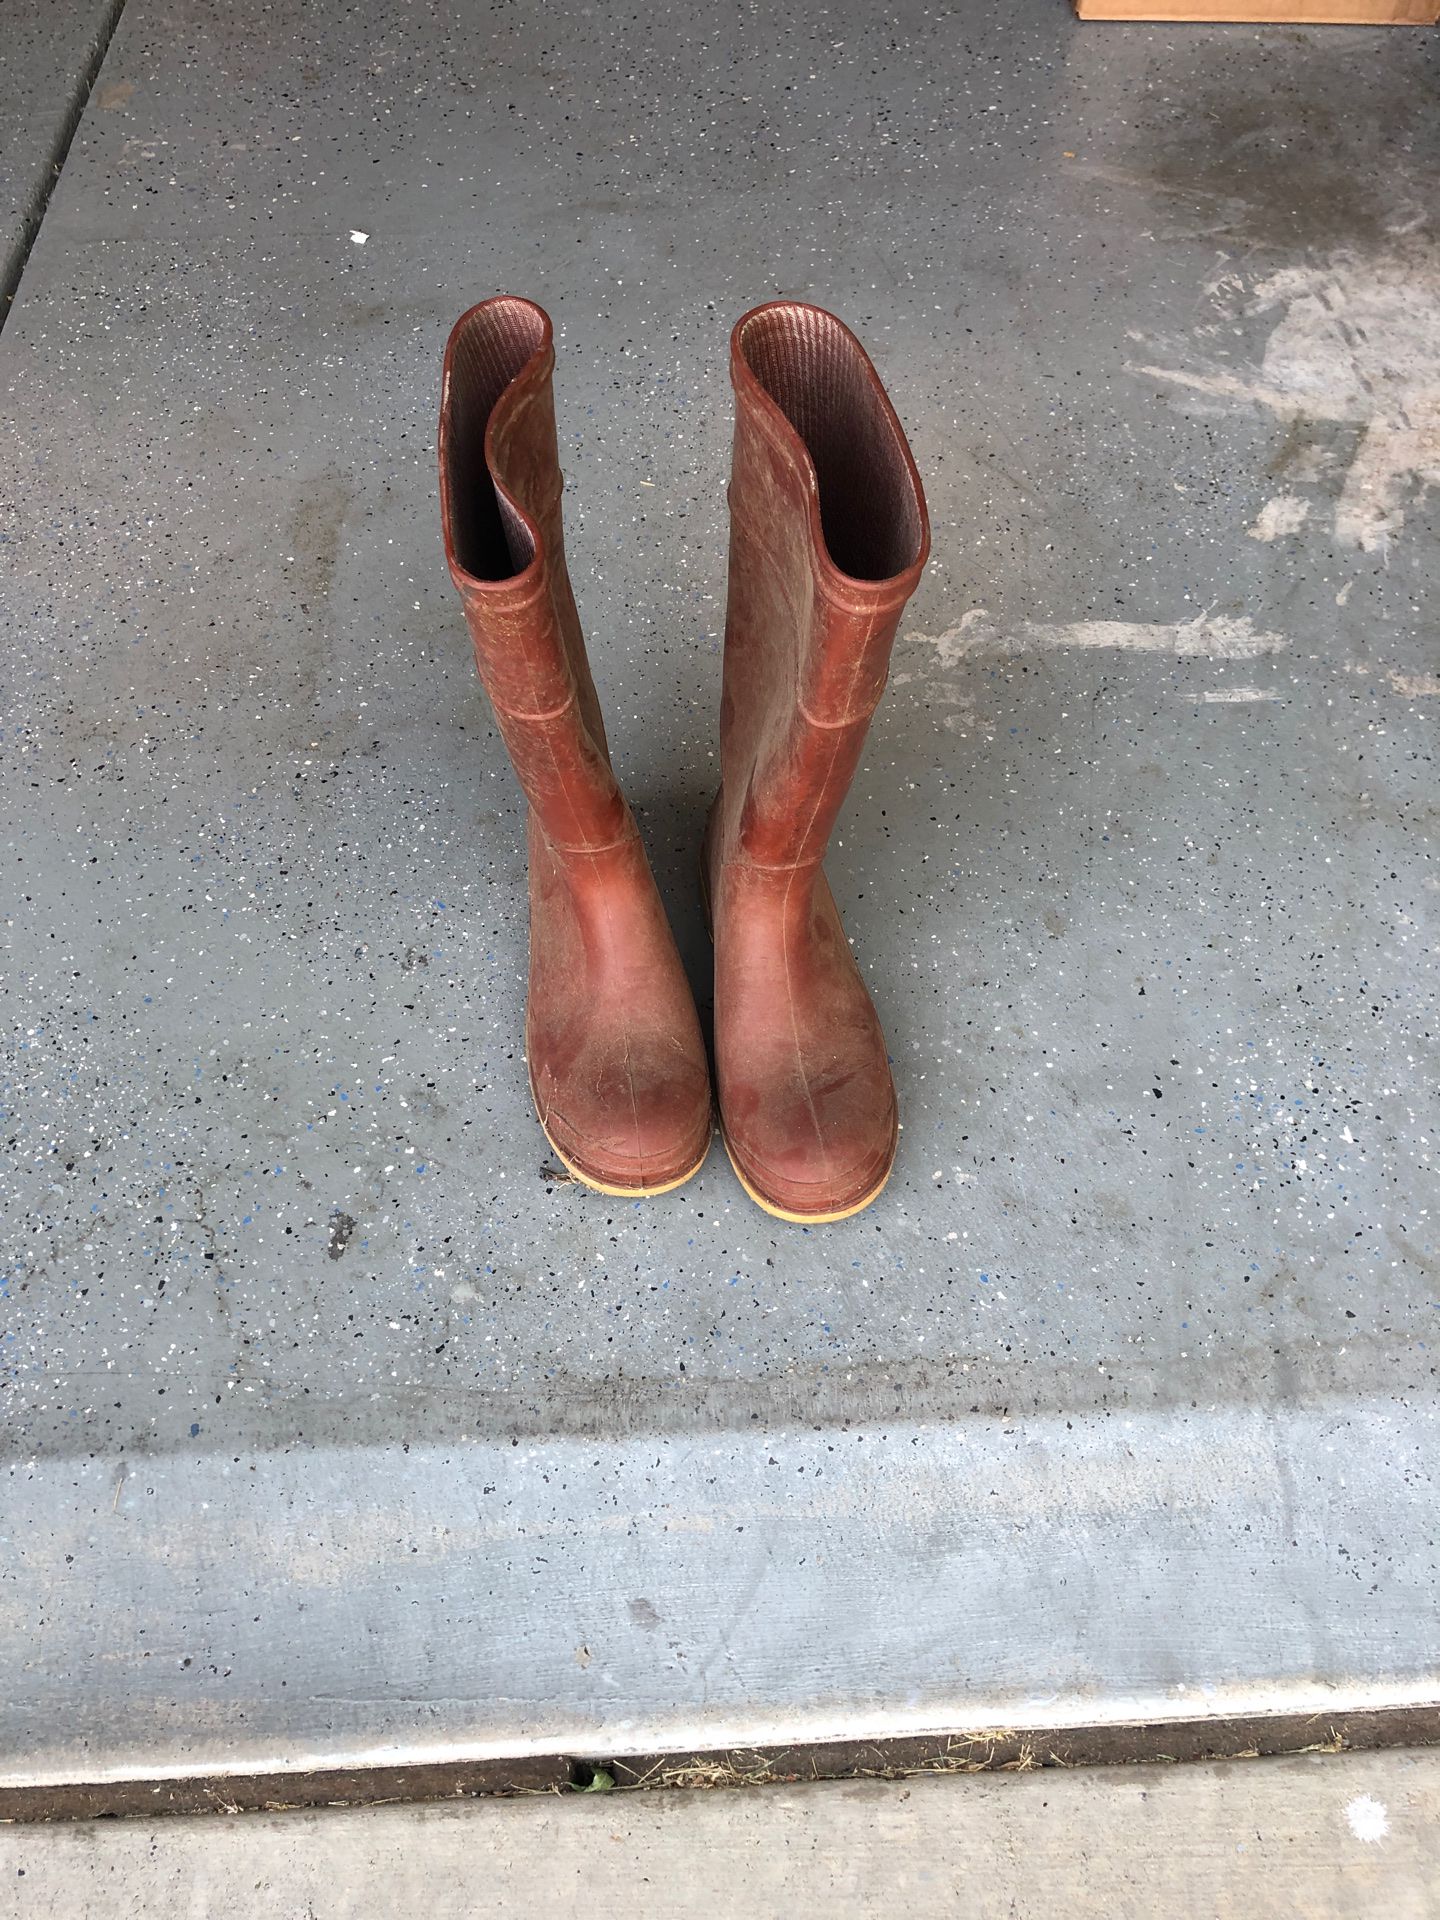 Rubber boots men’s size 9